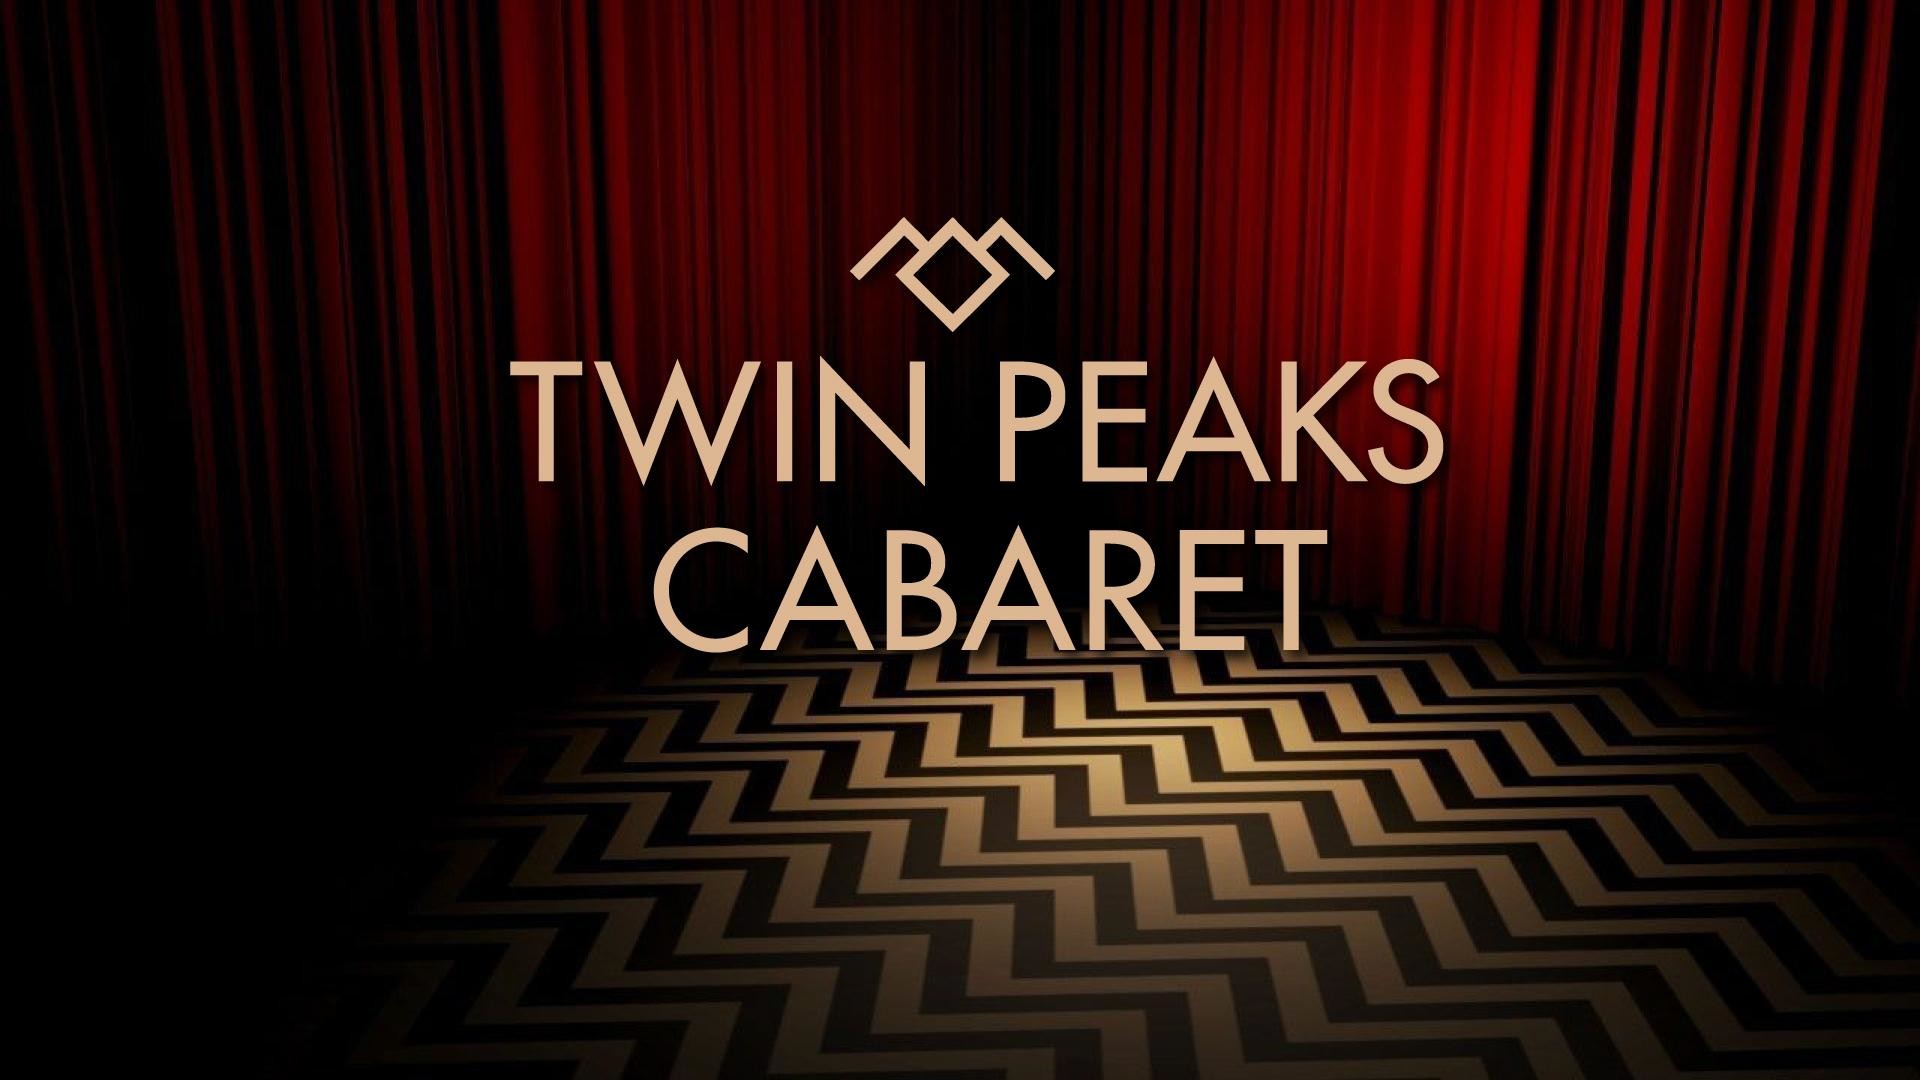 Twin Peaks Black Lodge , HD Wallpaper & Backgrounds